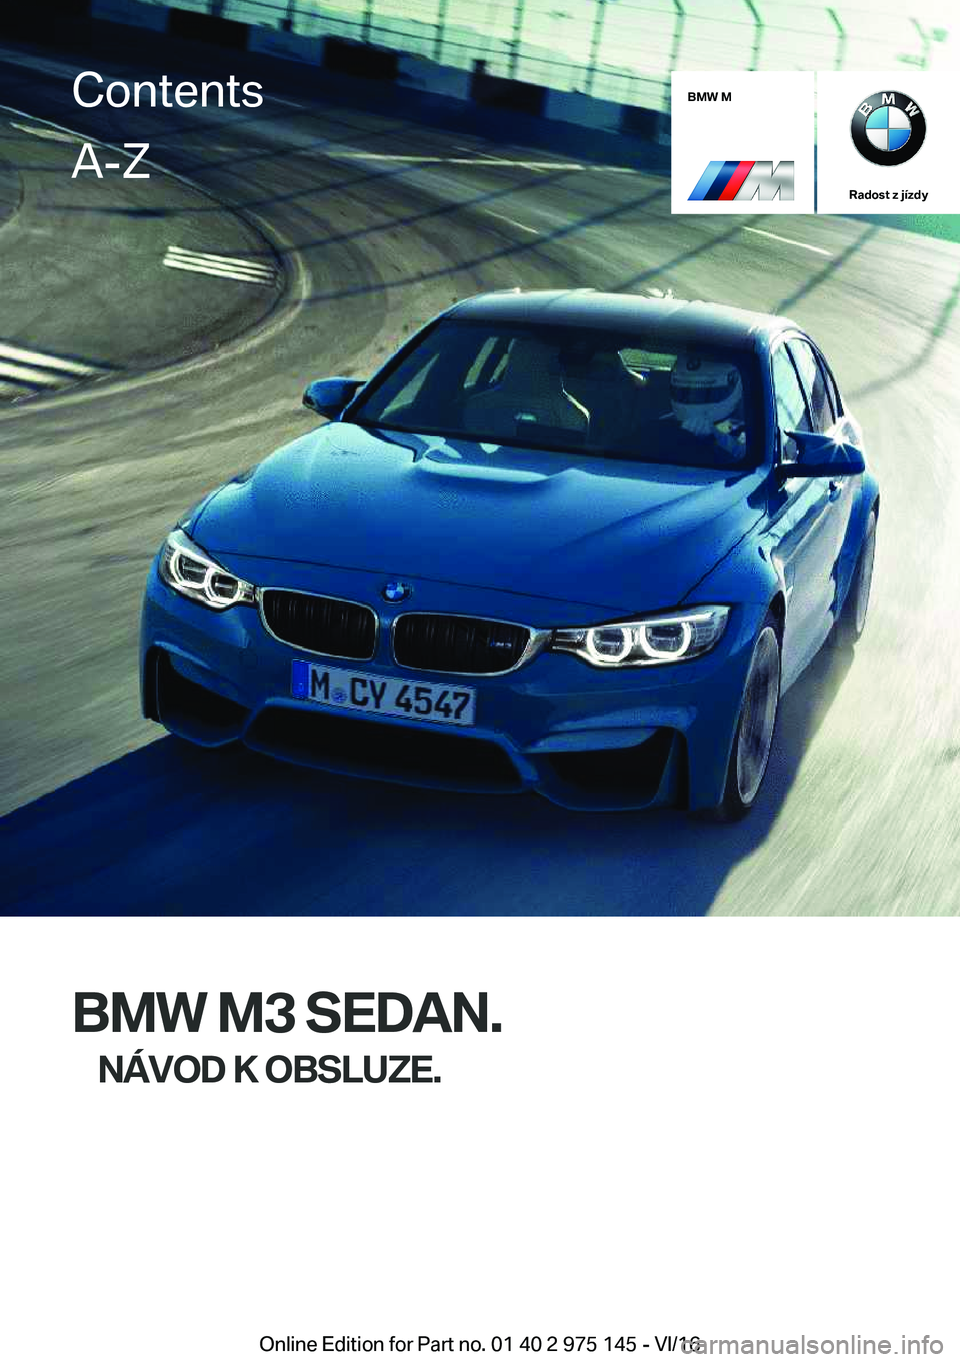 BMW M3 2017  Návod na použití (in Czech) �B�M�W��M
�R�a�d�o�s�t��z��j�